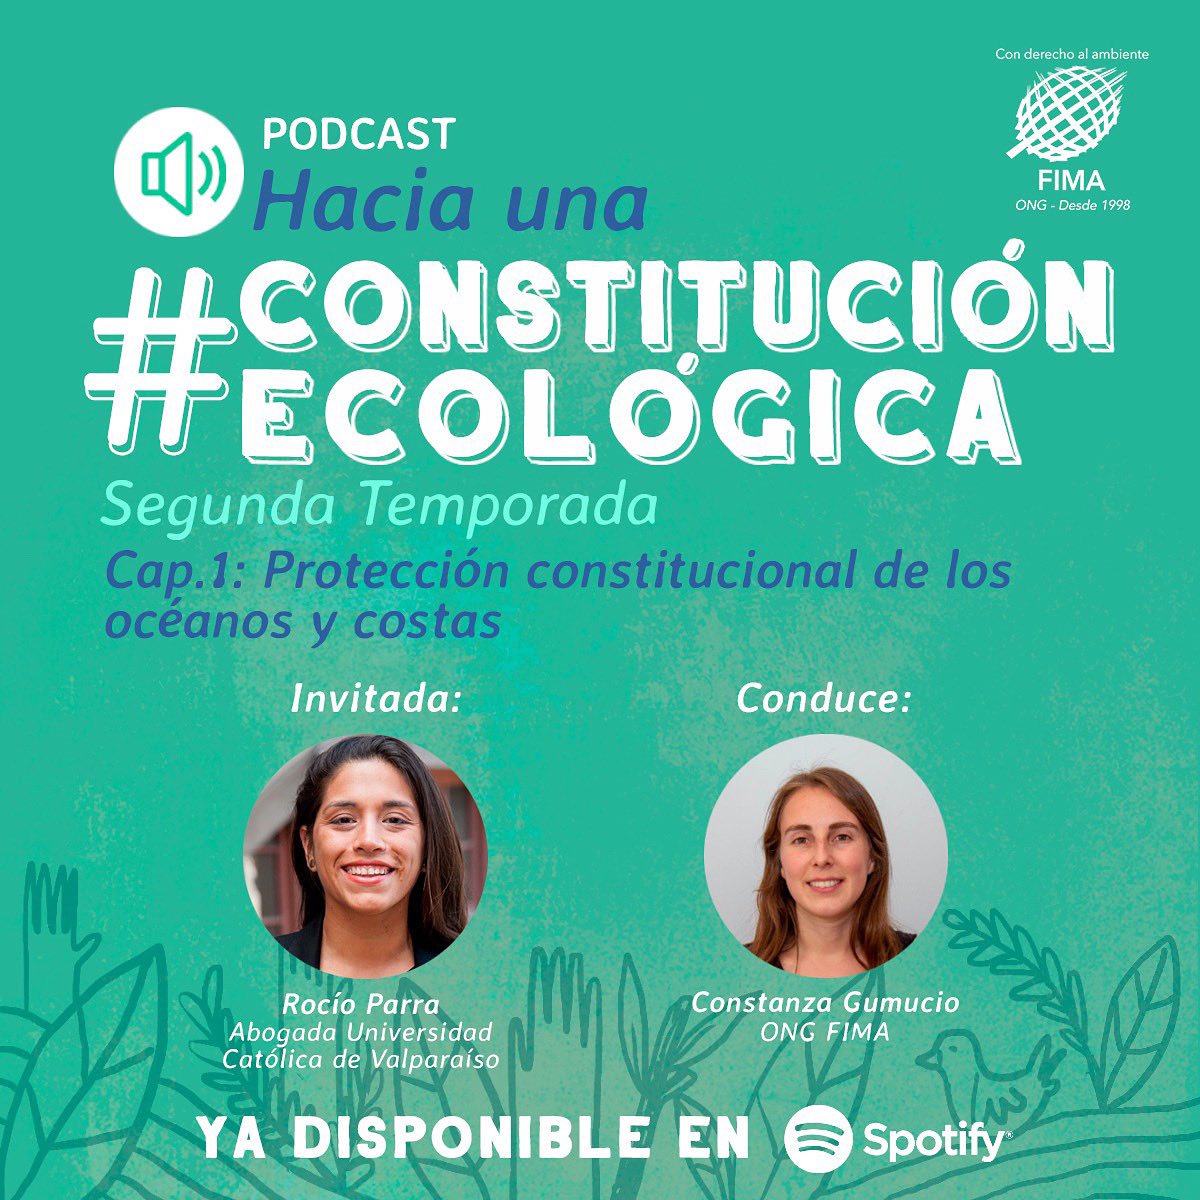 Comienza la segunda temporada del podcast Hacia una Constitución Ecológica